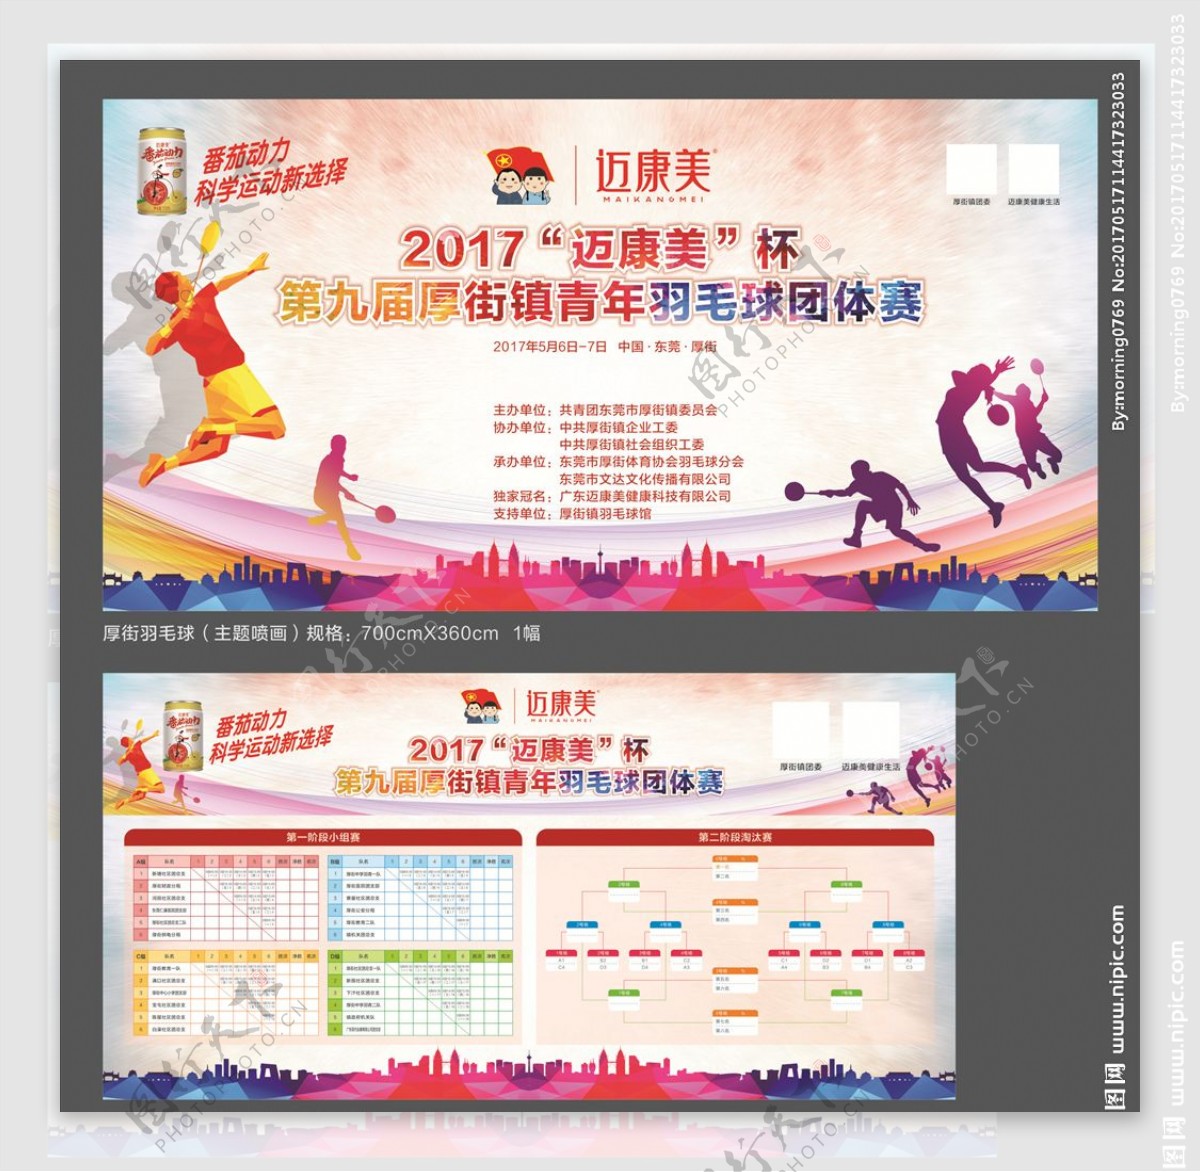 201704羽毛球活动广告